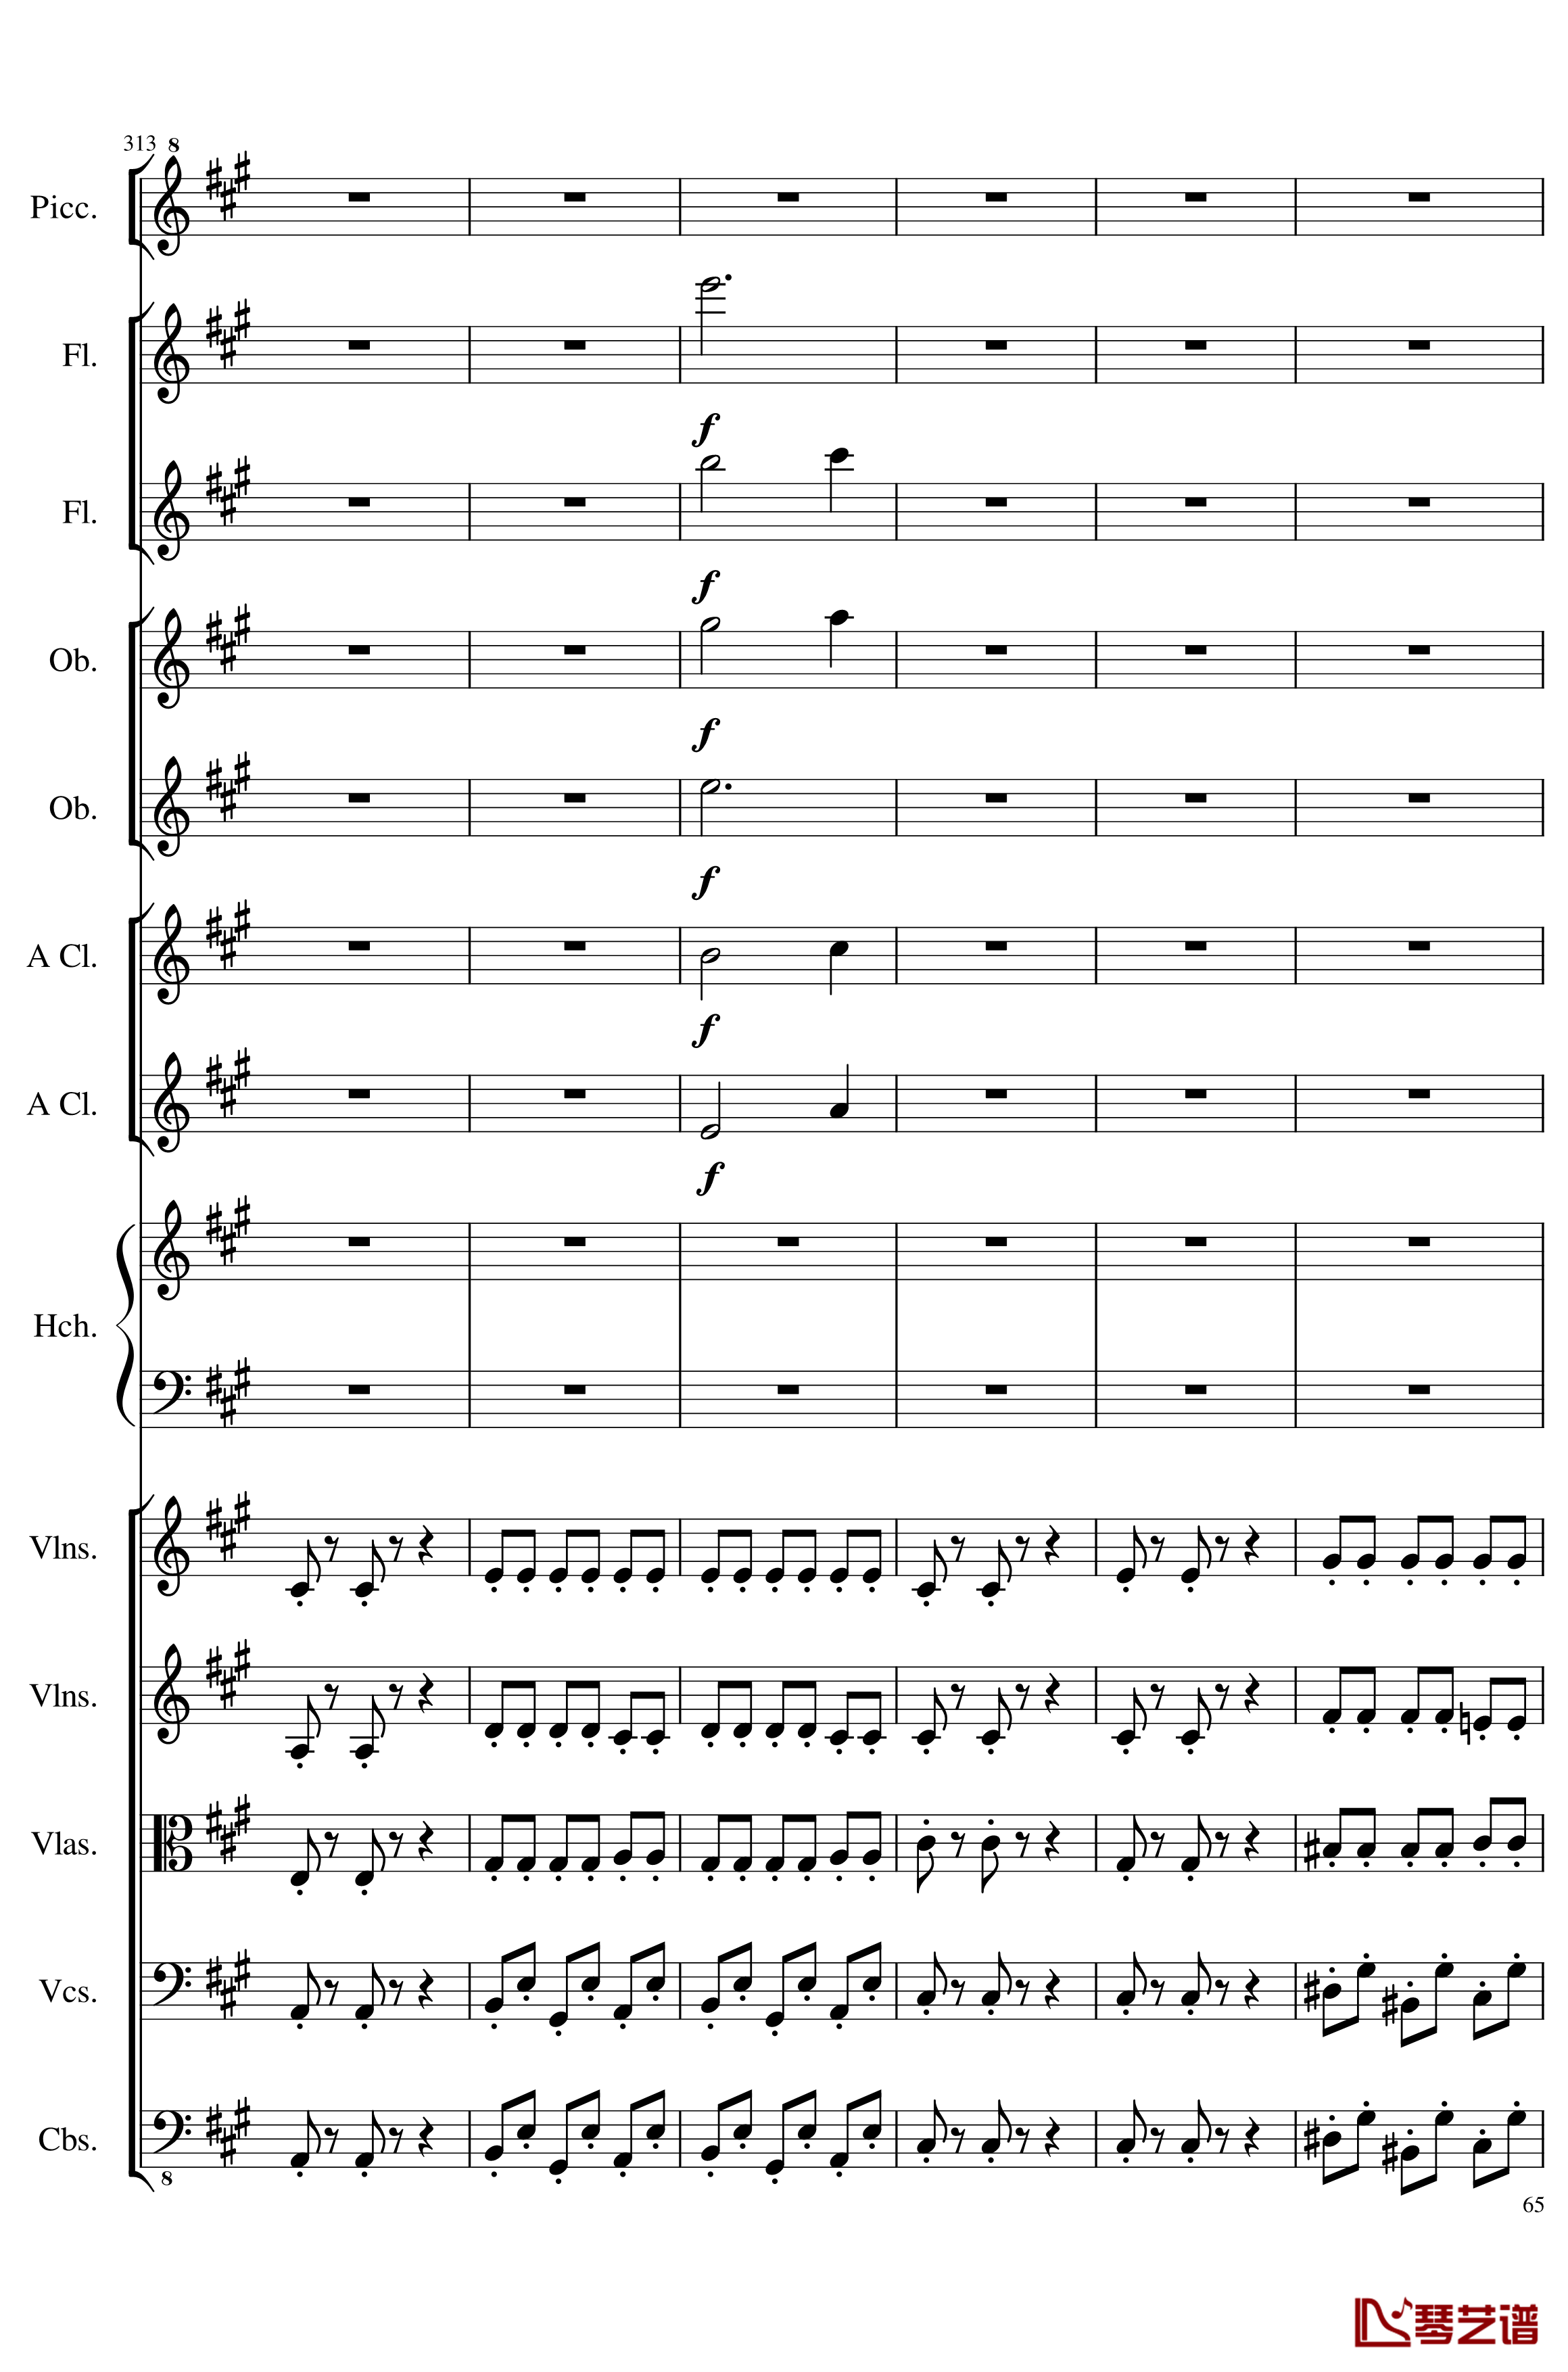 7 Contredanses No.1-7, Op.124钢琴谱-7首乡村舞曲，第一至第七，作品124-一个球65